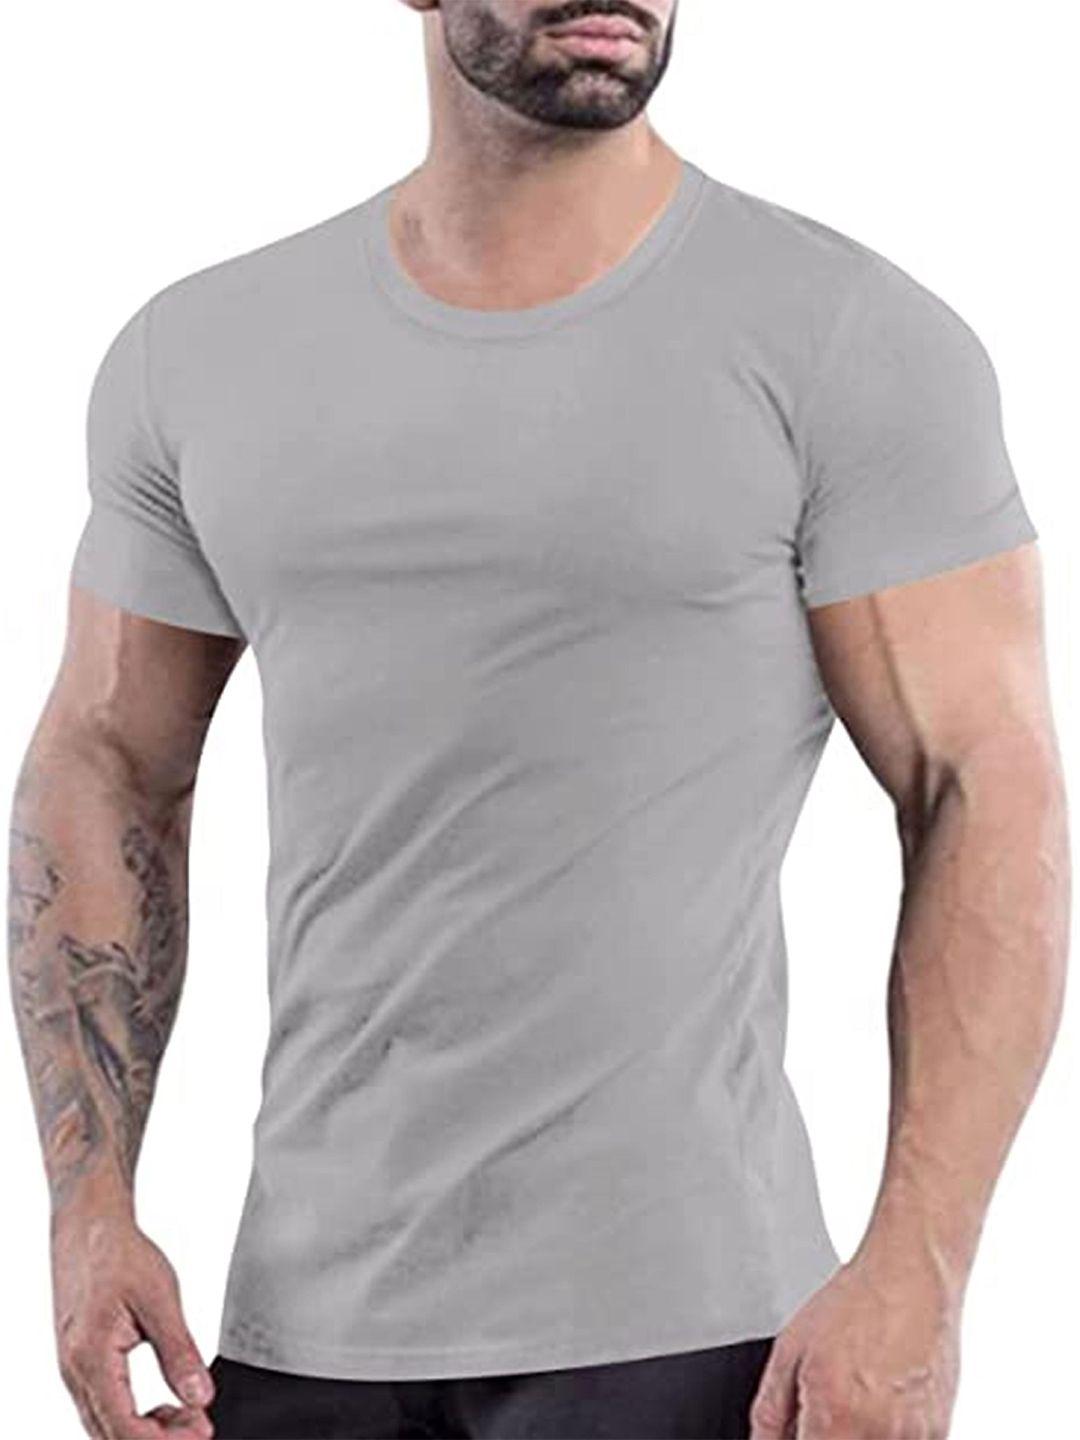 kaezri round neck cotton t-shirt